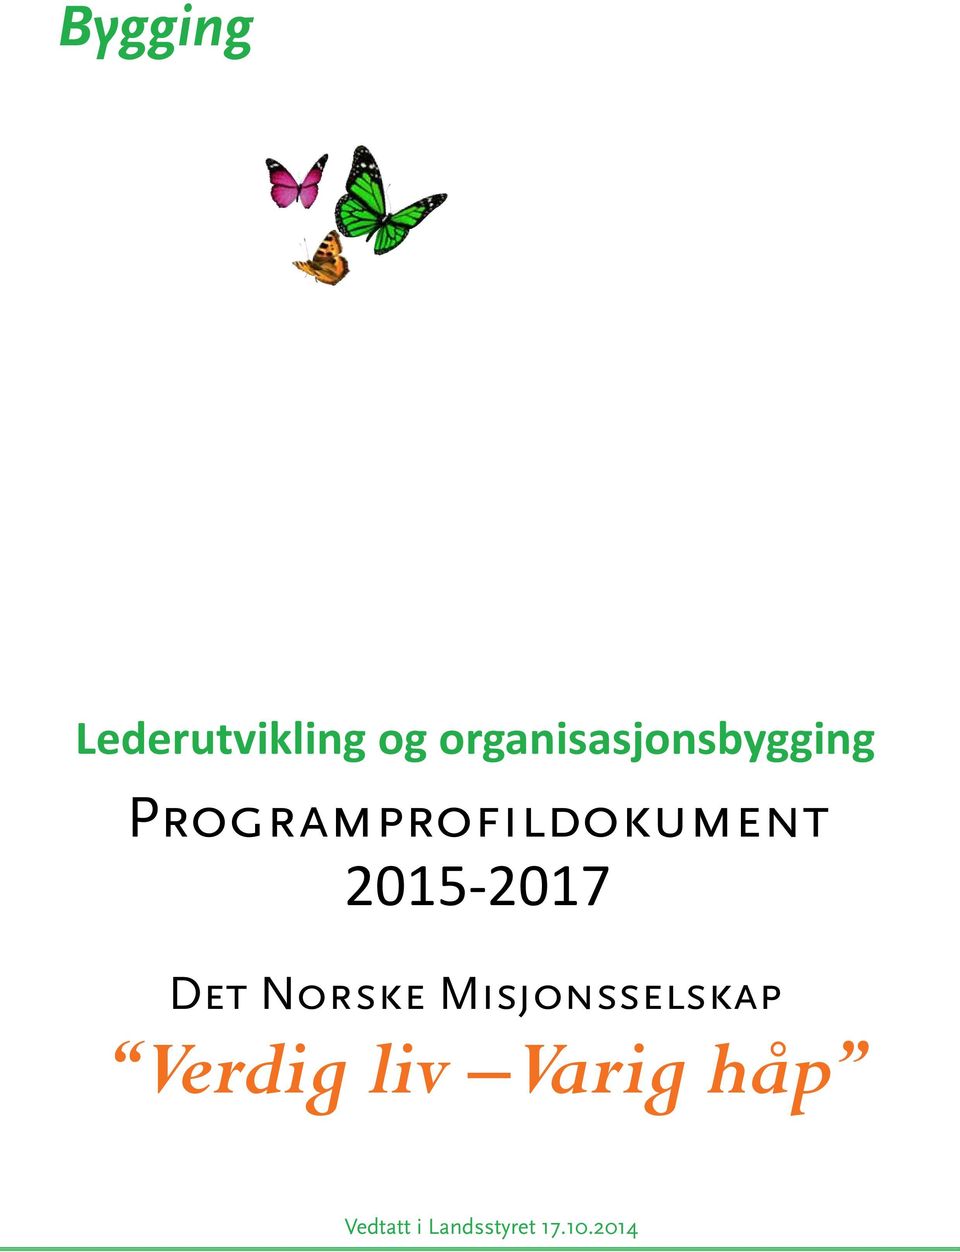 Programprofildokument 2015-2017 Det